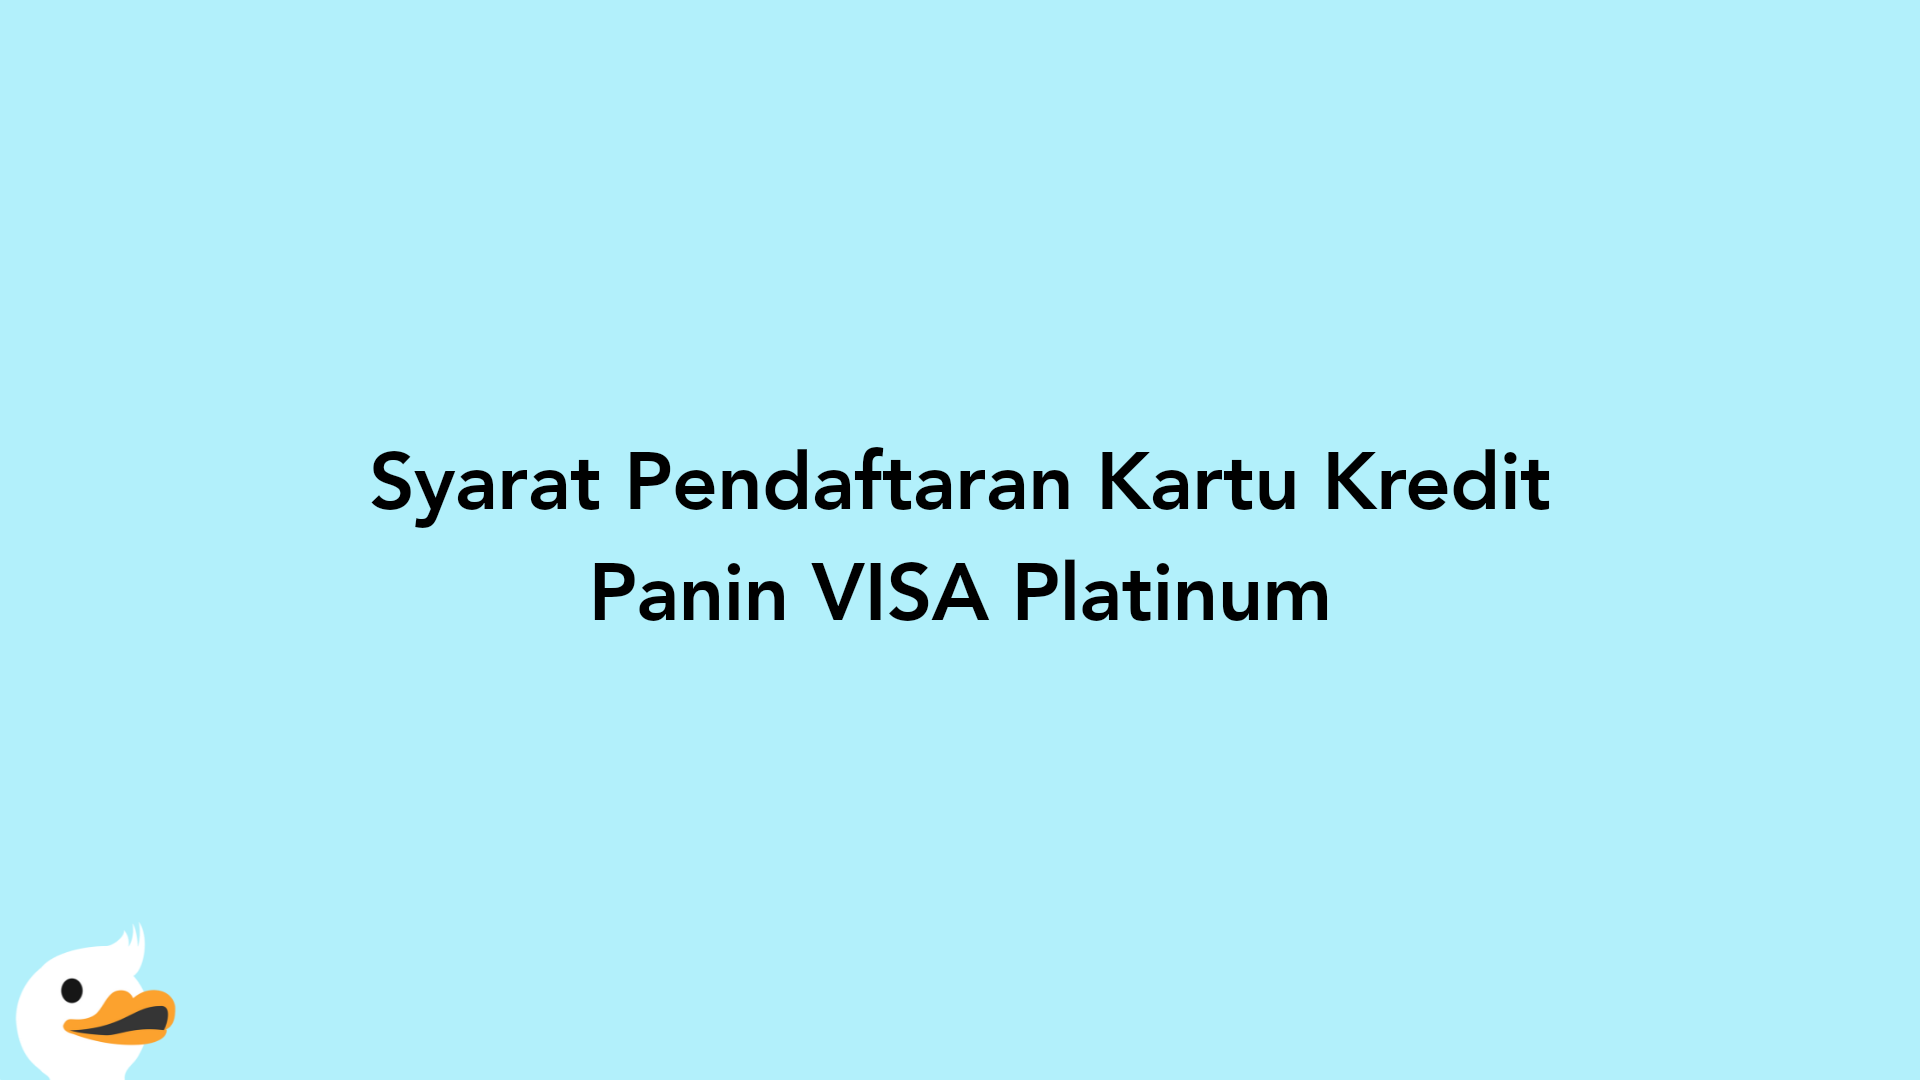 Syarat Pendaftaran Kartu Kredit Panin VISA Platinum